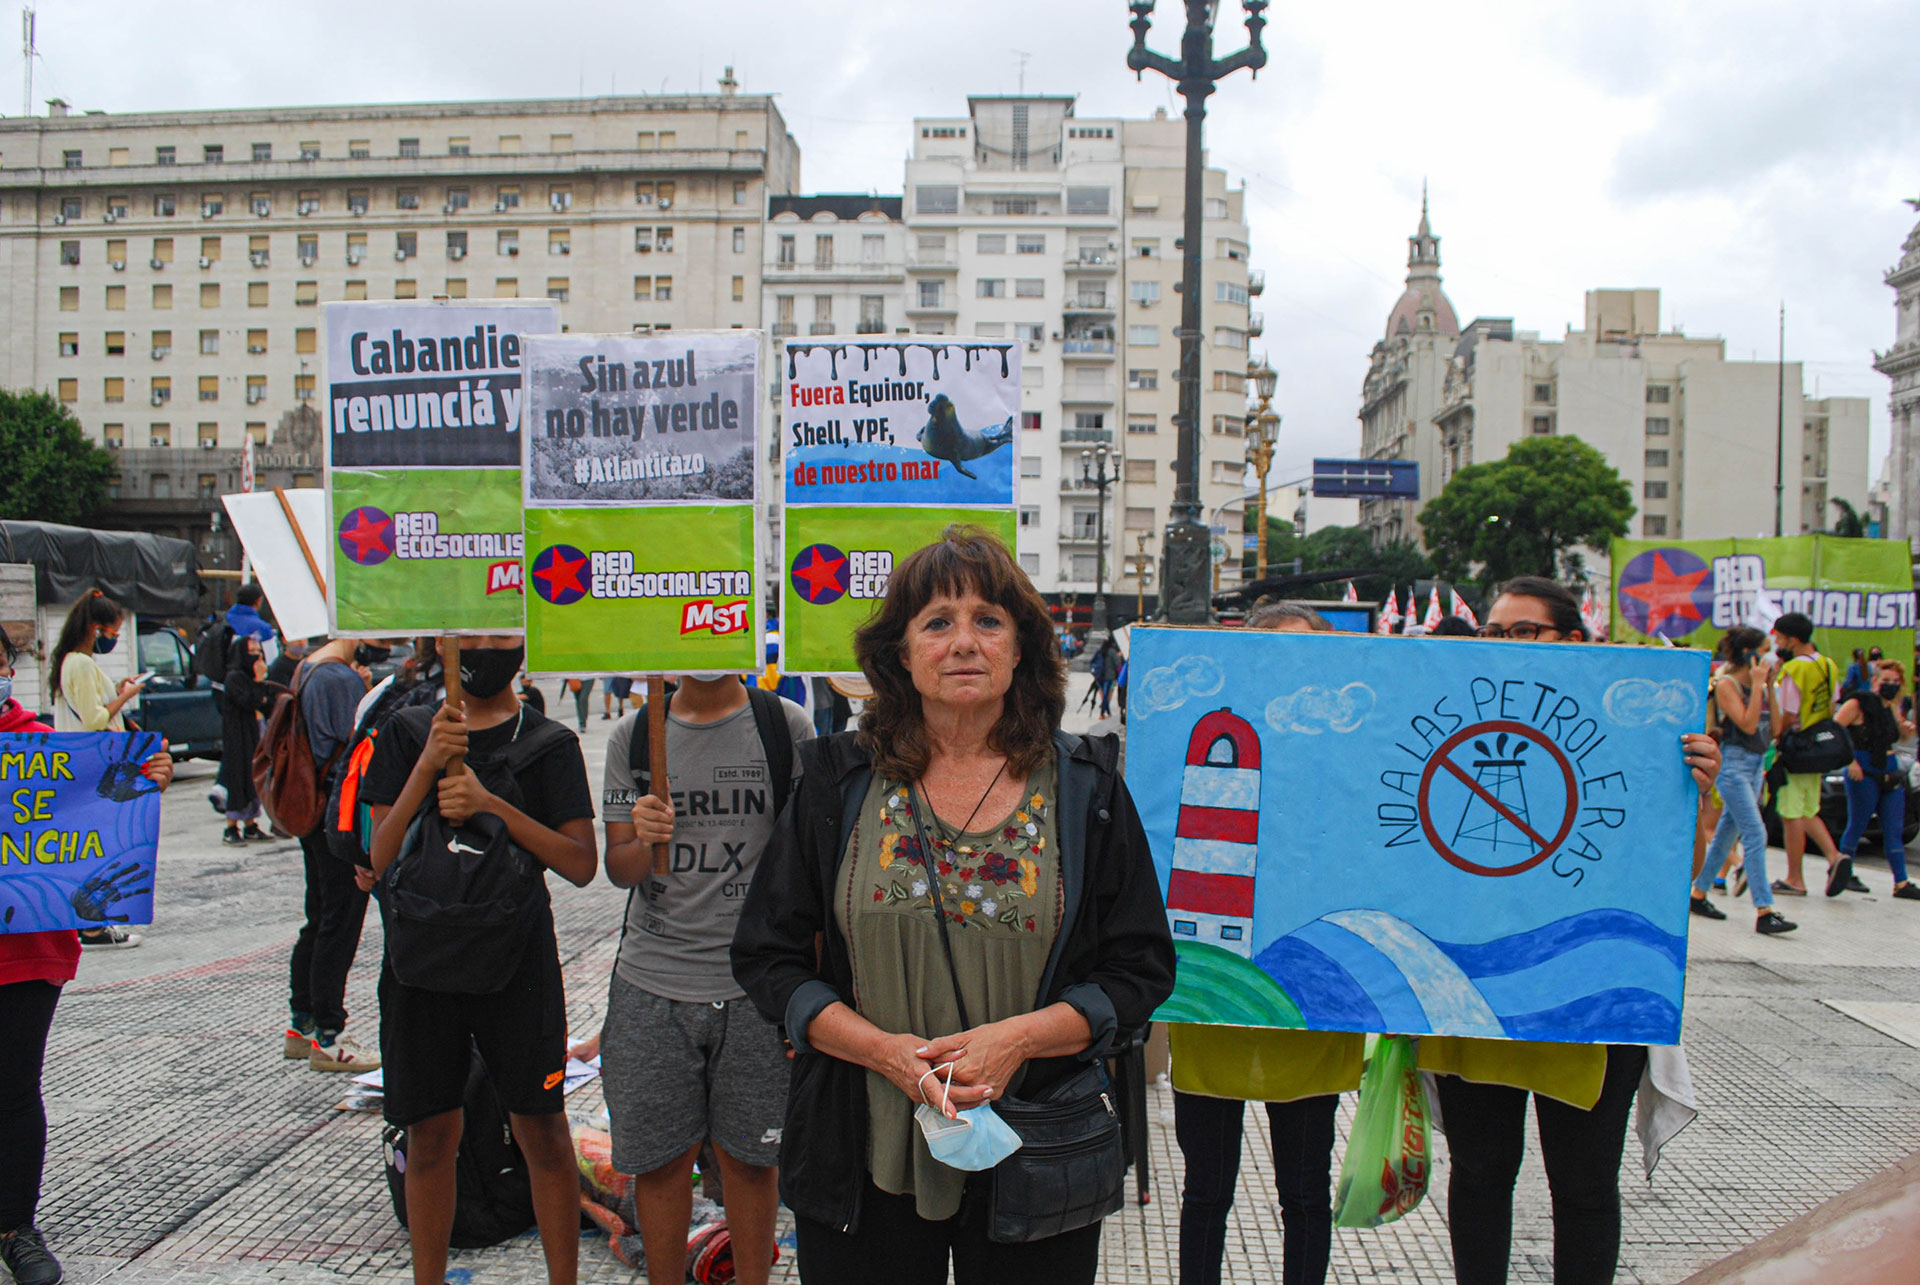 Una de las participantes de la movida fue Vilma Ripoll, dirigente política del movimiento MST,quien apoya el Atlanticazo y está en contra de la exploración sísmica